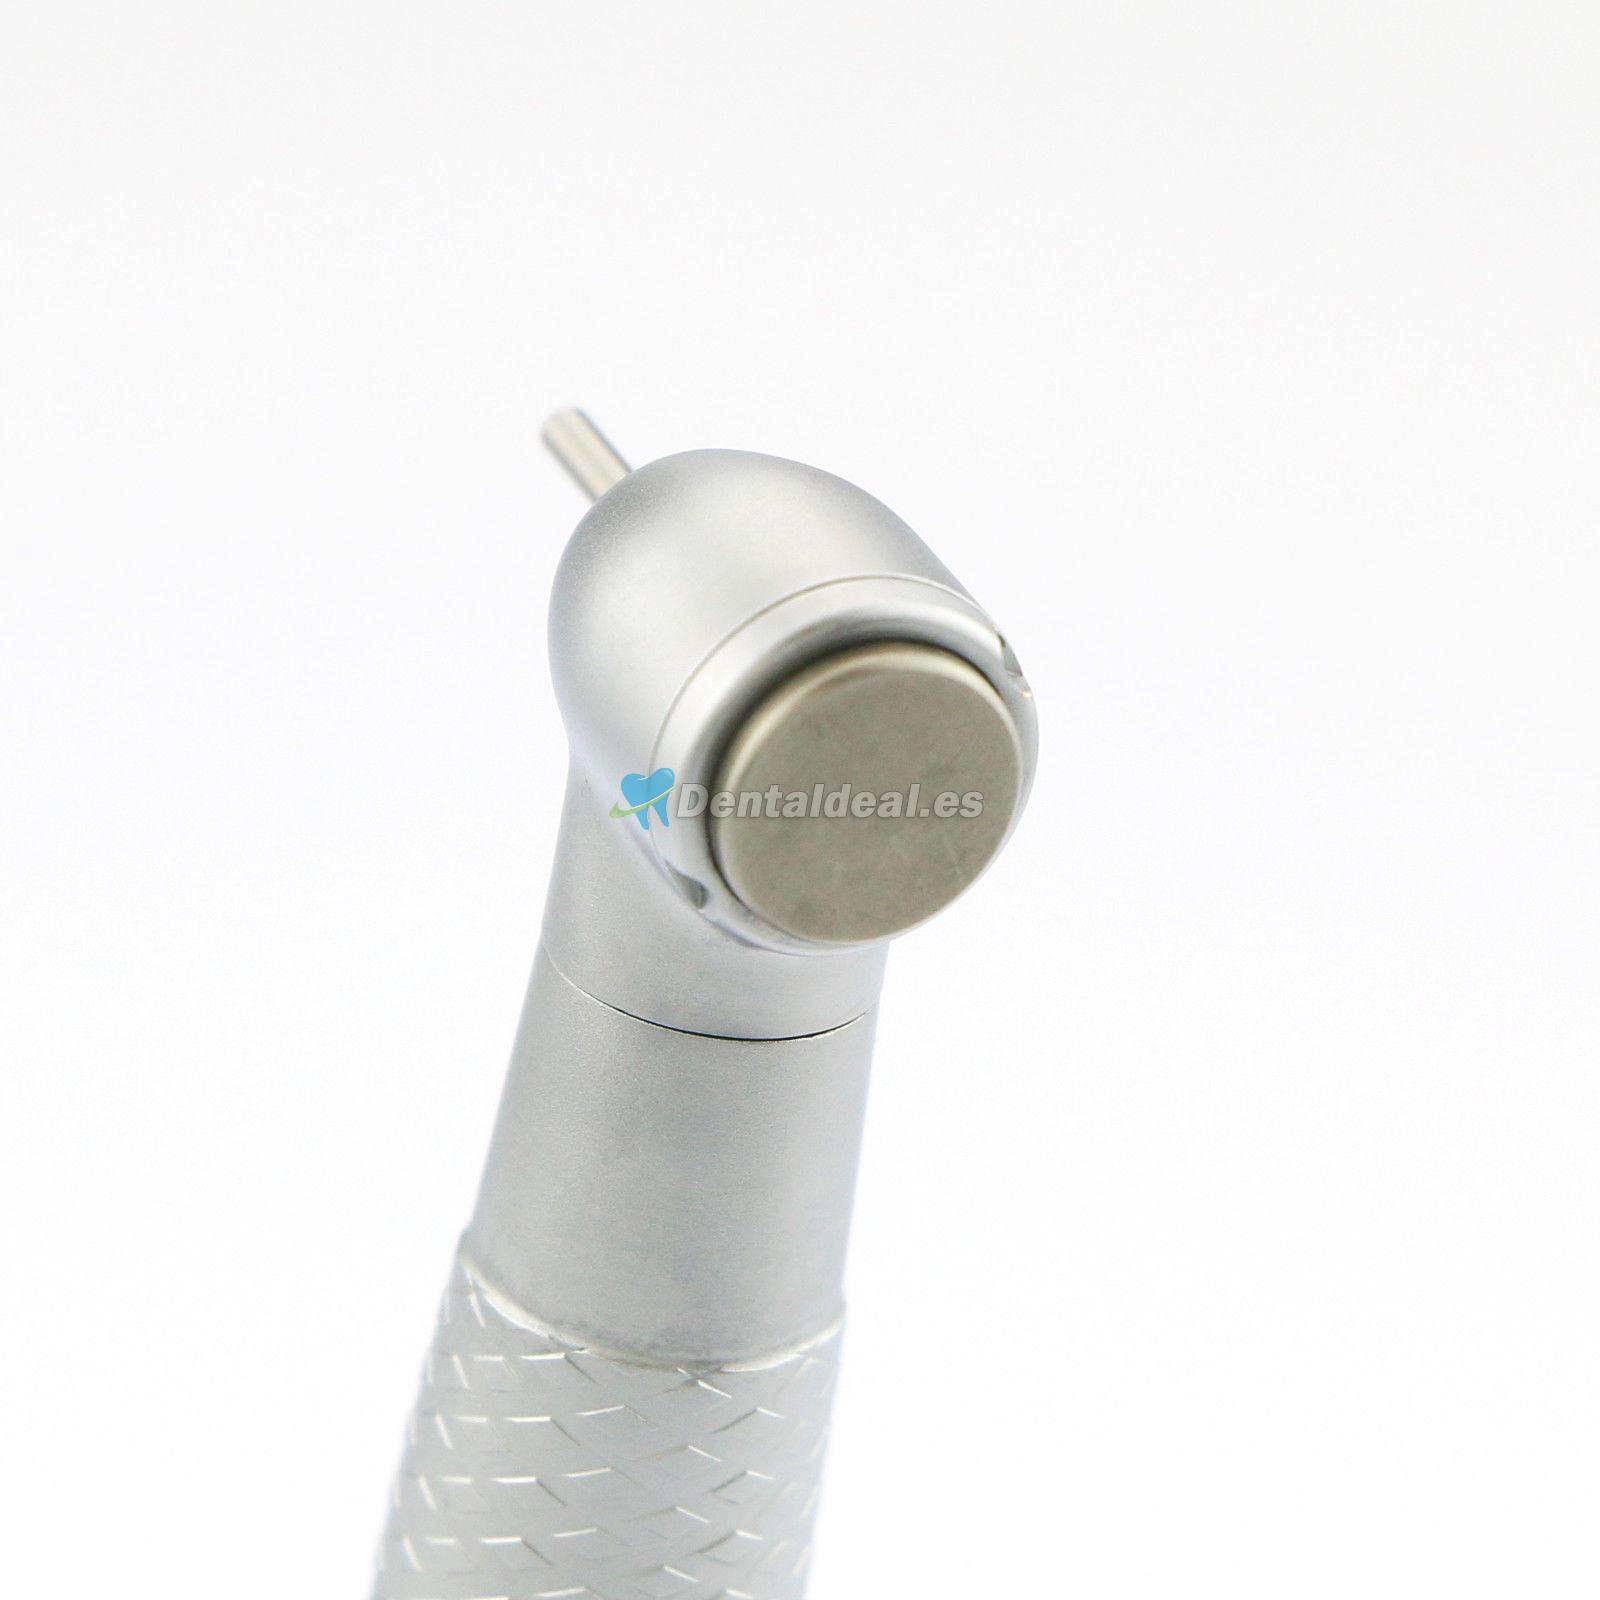 YUSENDENT® COXO CX207-GK-SP LED Turbina dental compatible KAVO (sin acoplador rápido)